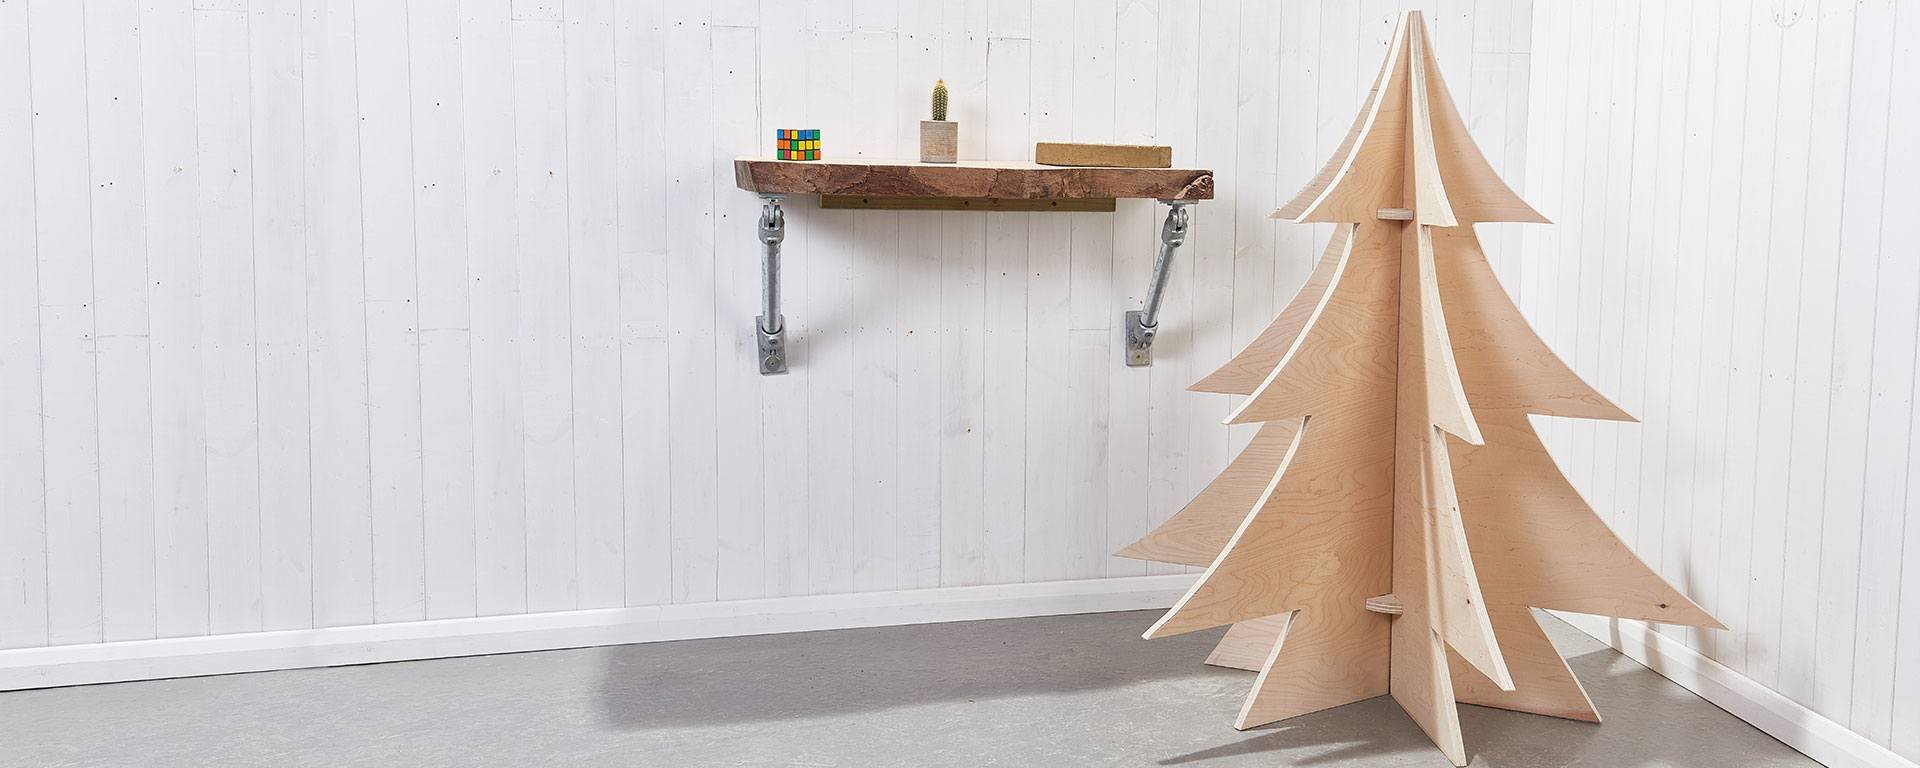 Så gör du en dekorativ julgran i plywood